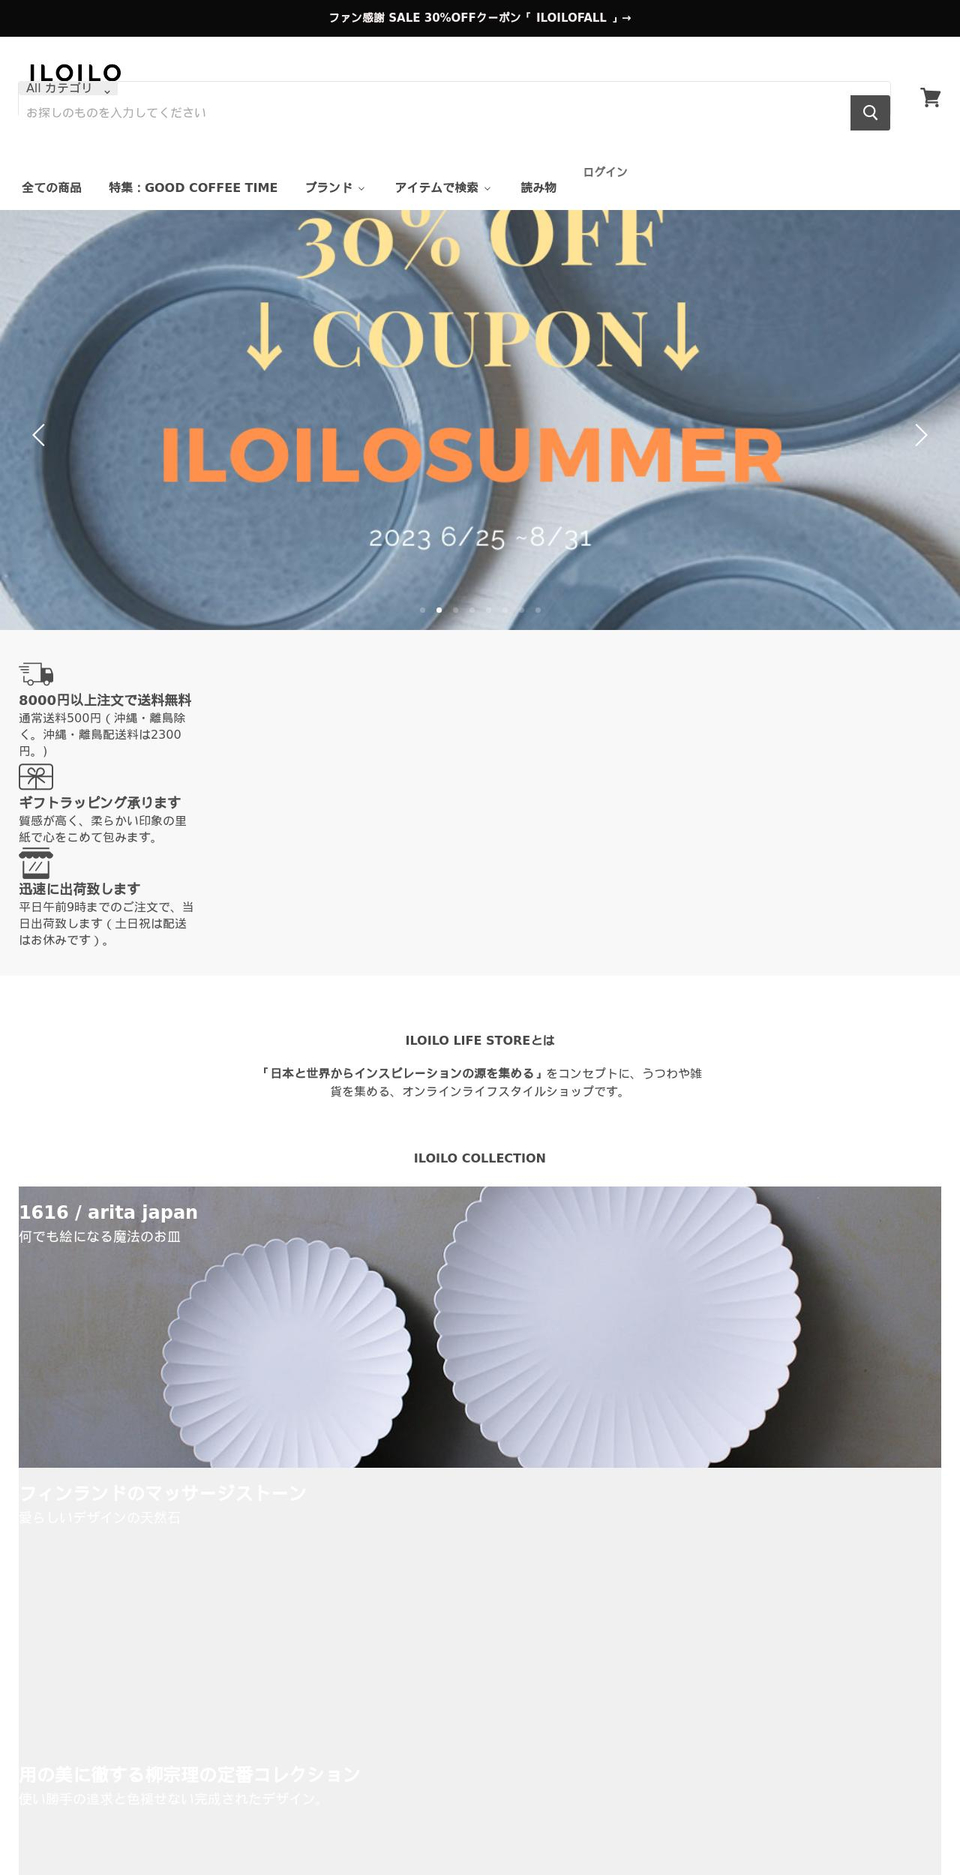 iloilo.jp shopify website screenshot